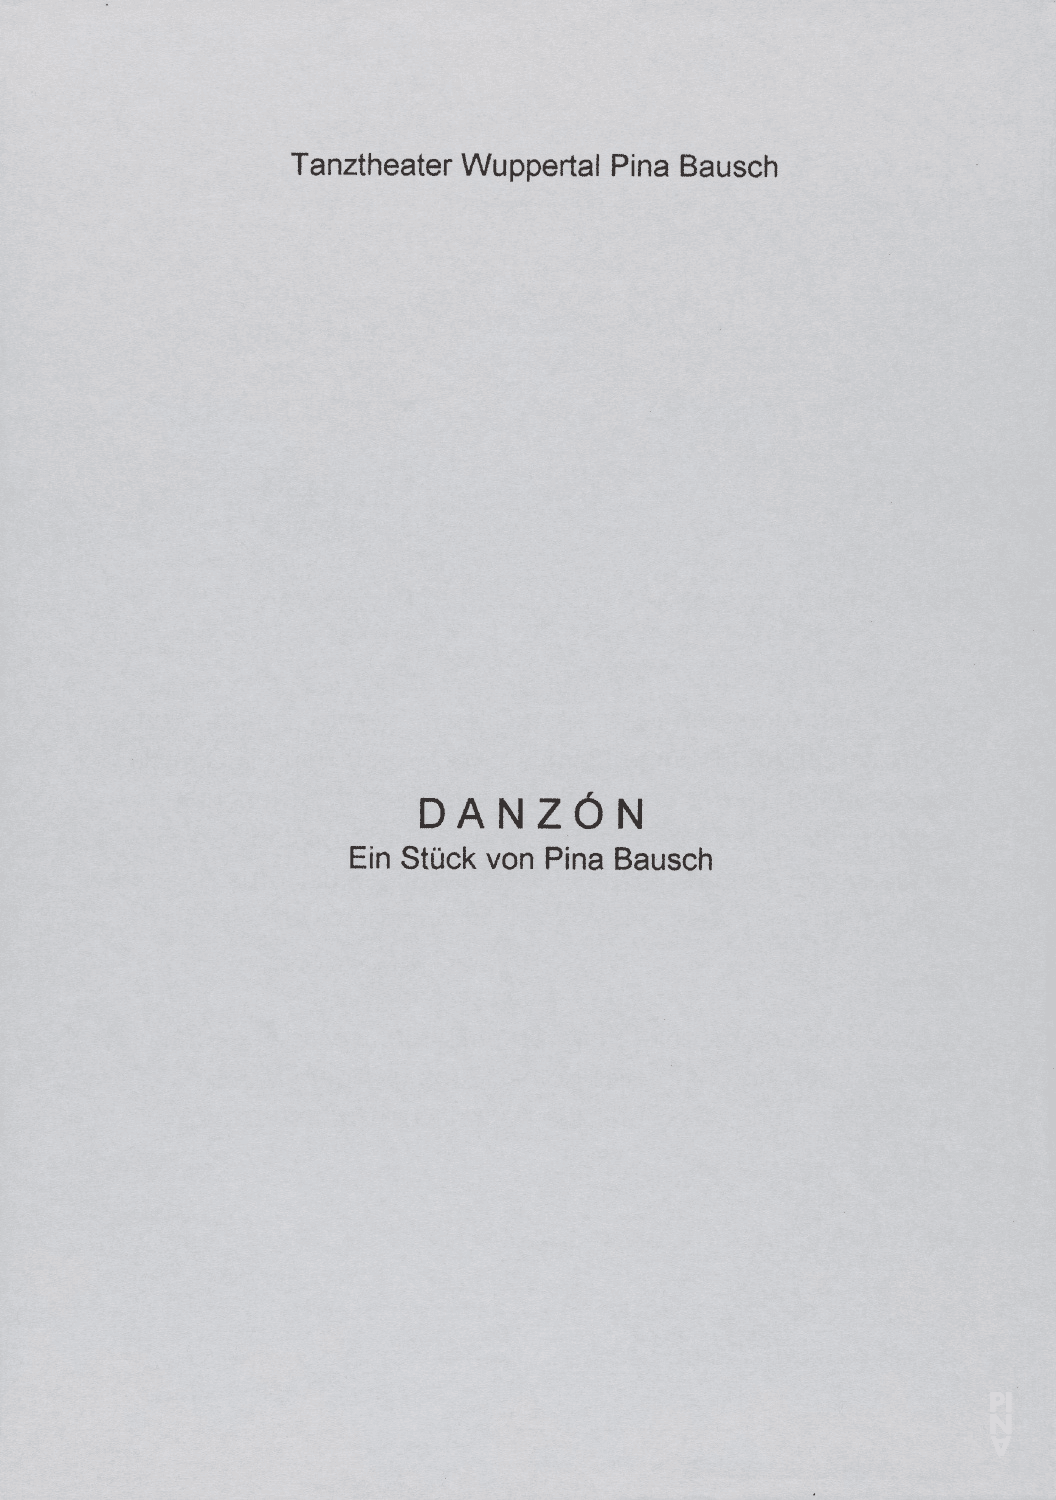 Programme pour « Danzón » de Pina Bausch avec Tanztheater Wuppertal à Wuppertal, 8 mars 2001 – 11 mars 2001